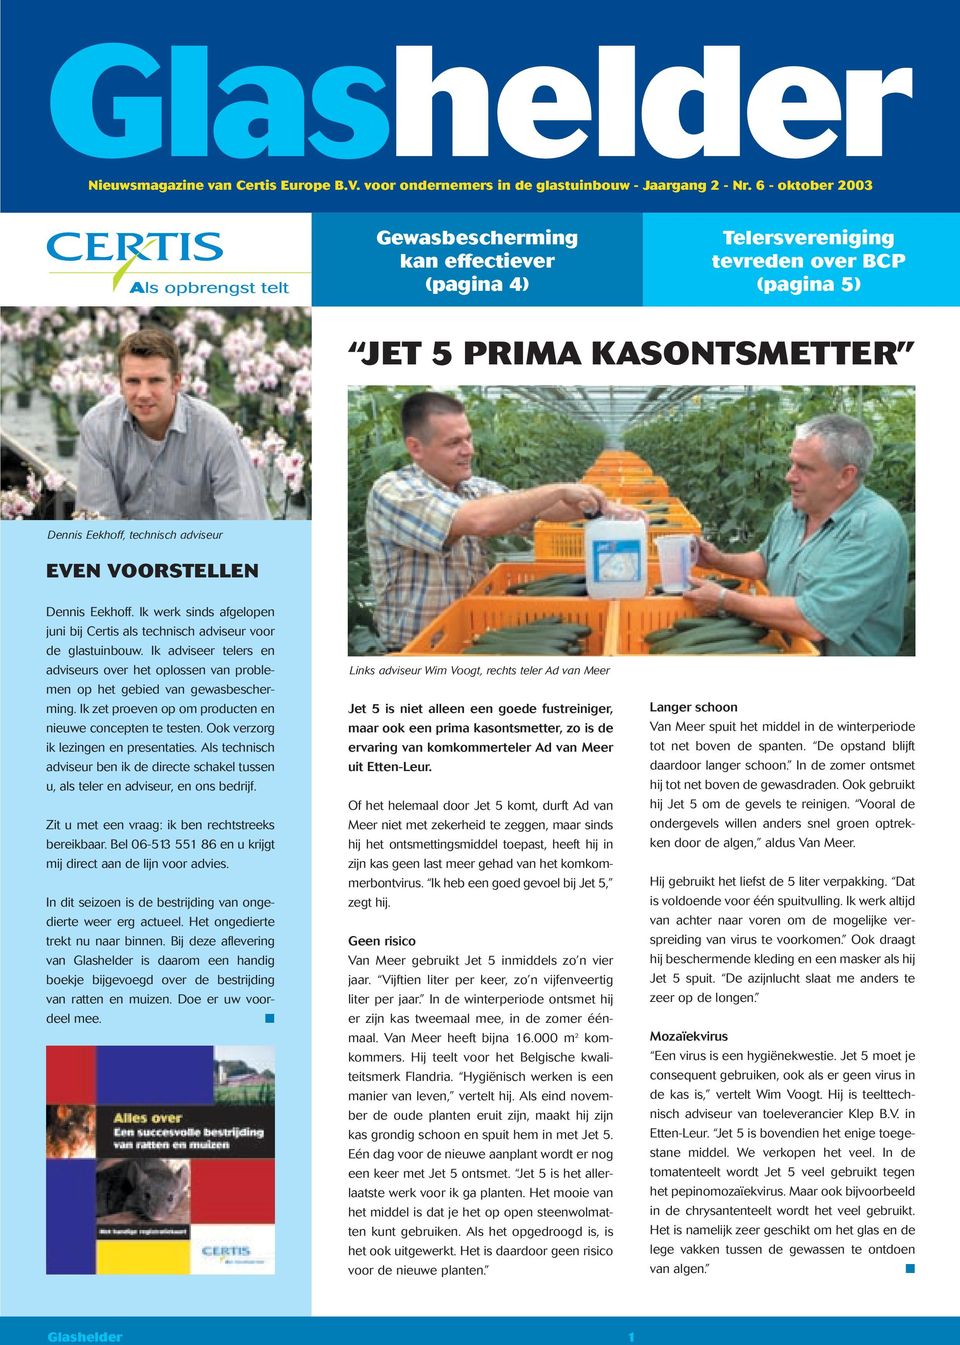 Ik werk sinds afgelopen juni bij Certis als technisch adviseur voor de glastuinbouw. Ik adviseer telers en adviseurs over het oplossen van problemen op het gebied van gewasbescherming.